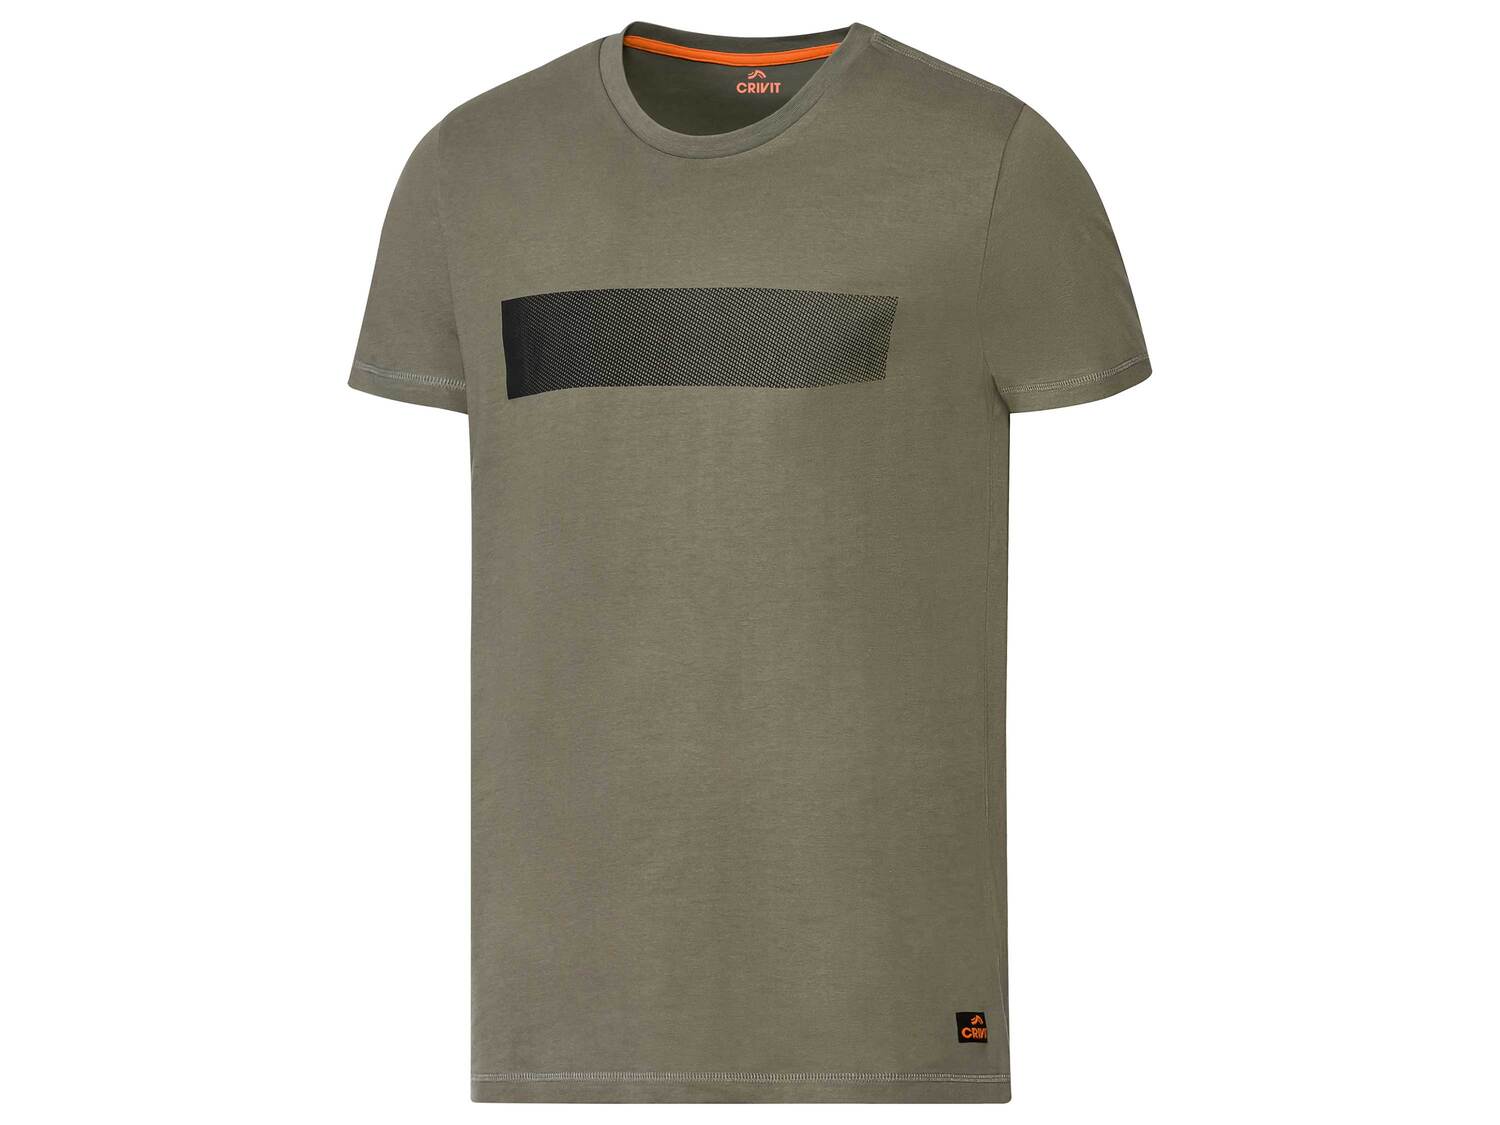 T-shirt technique , le prix 3.99 &#8364; 
- Du S au XL selon mod&egrave;le
- ...